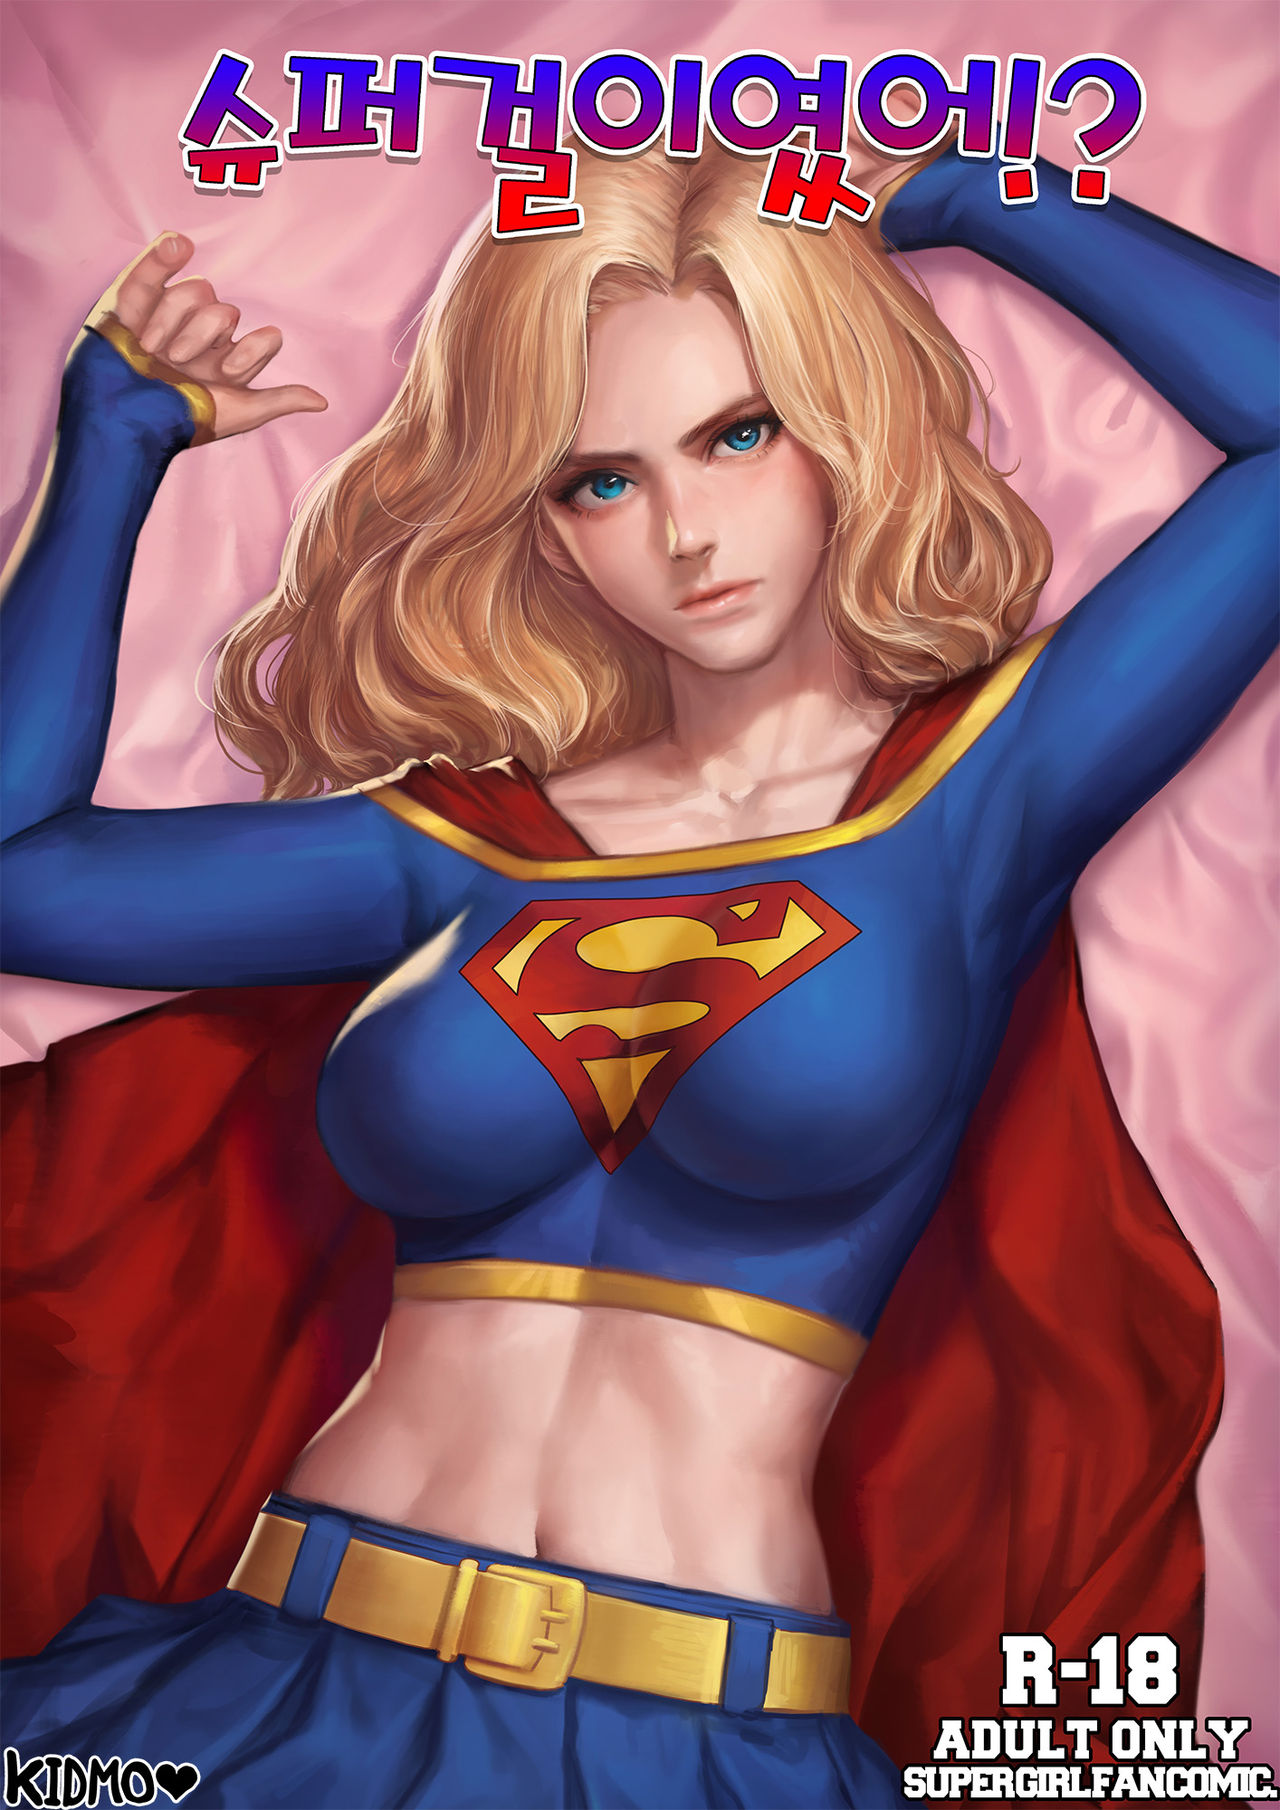 Porn supergirl Super girl,